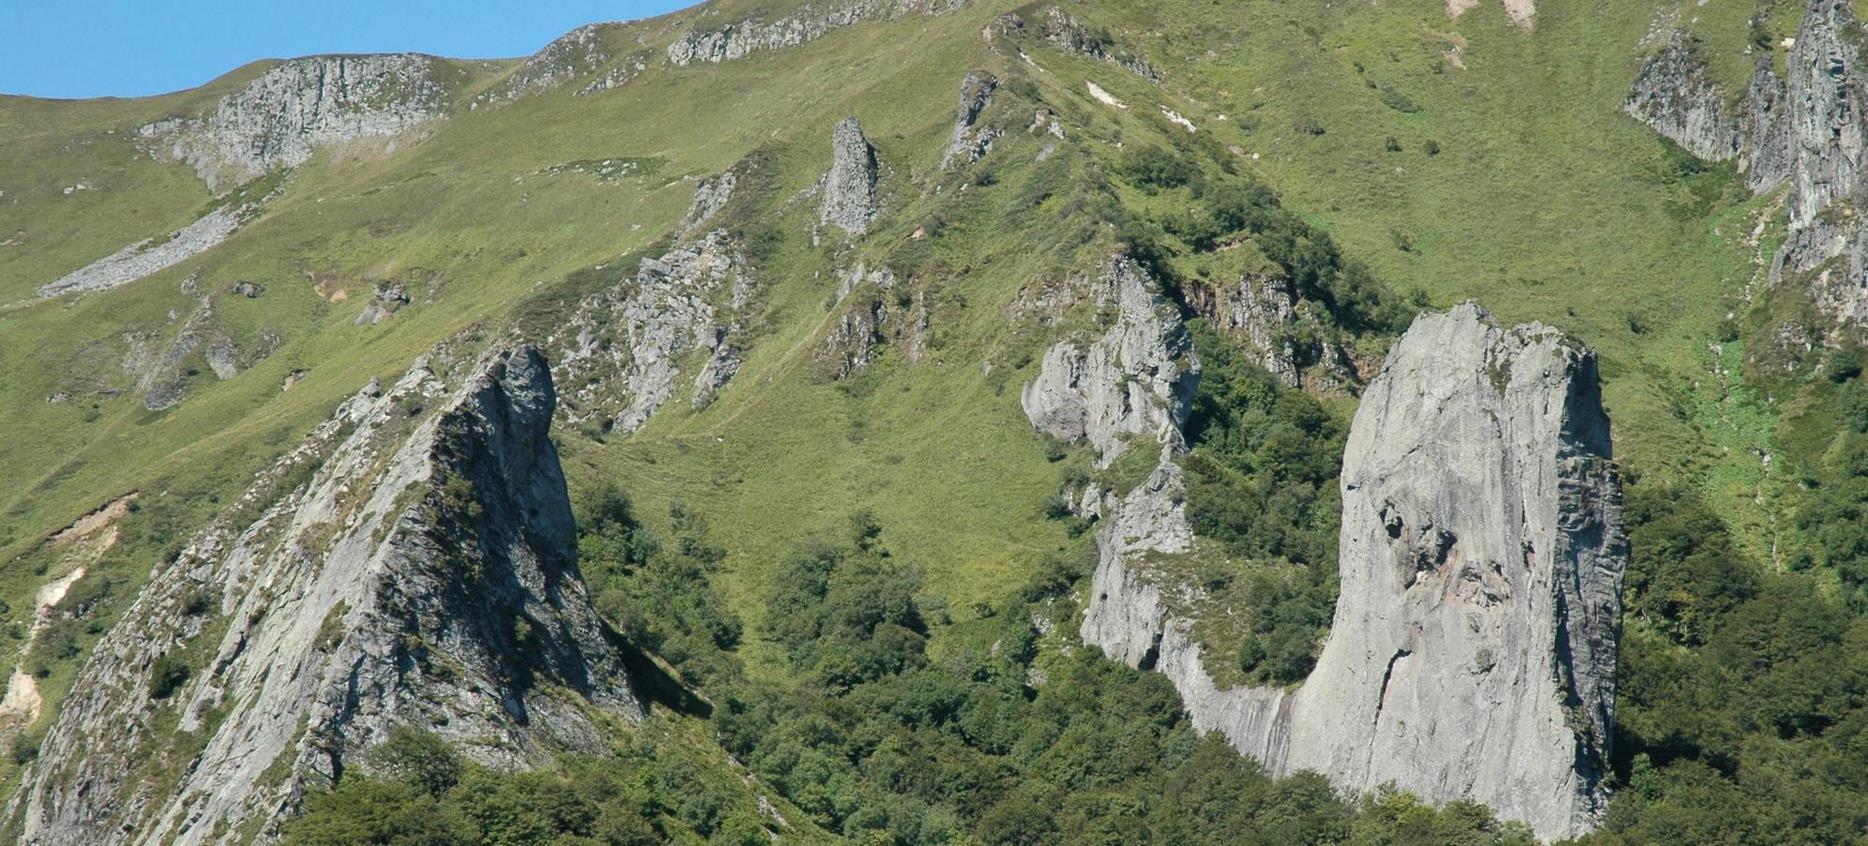 Super Besse - La Vallée de Chaudefour, parcours d'escalade dans le parc naturel